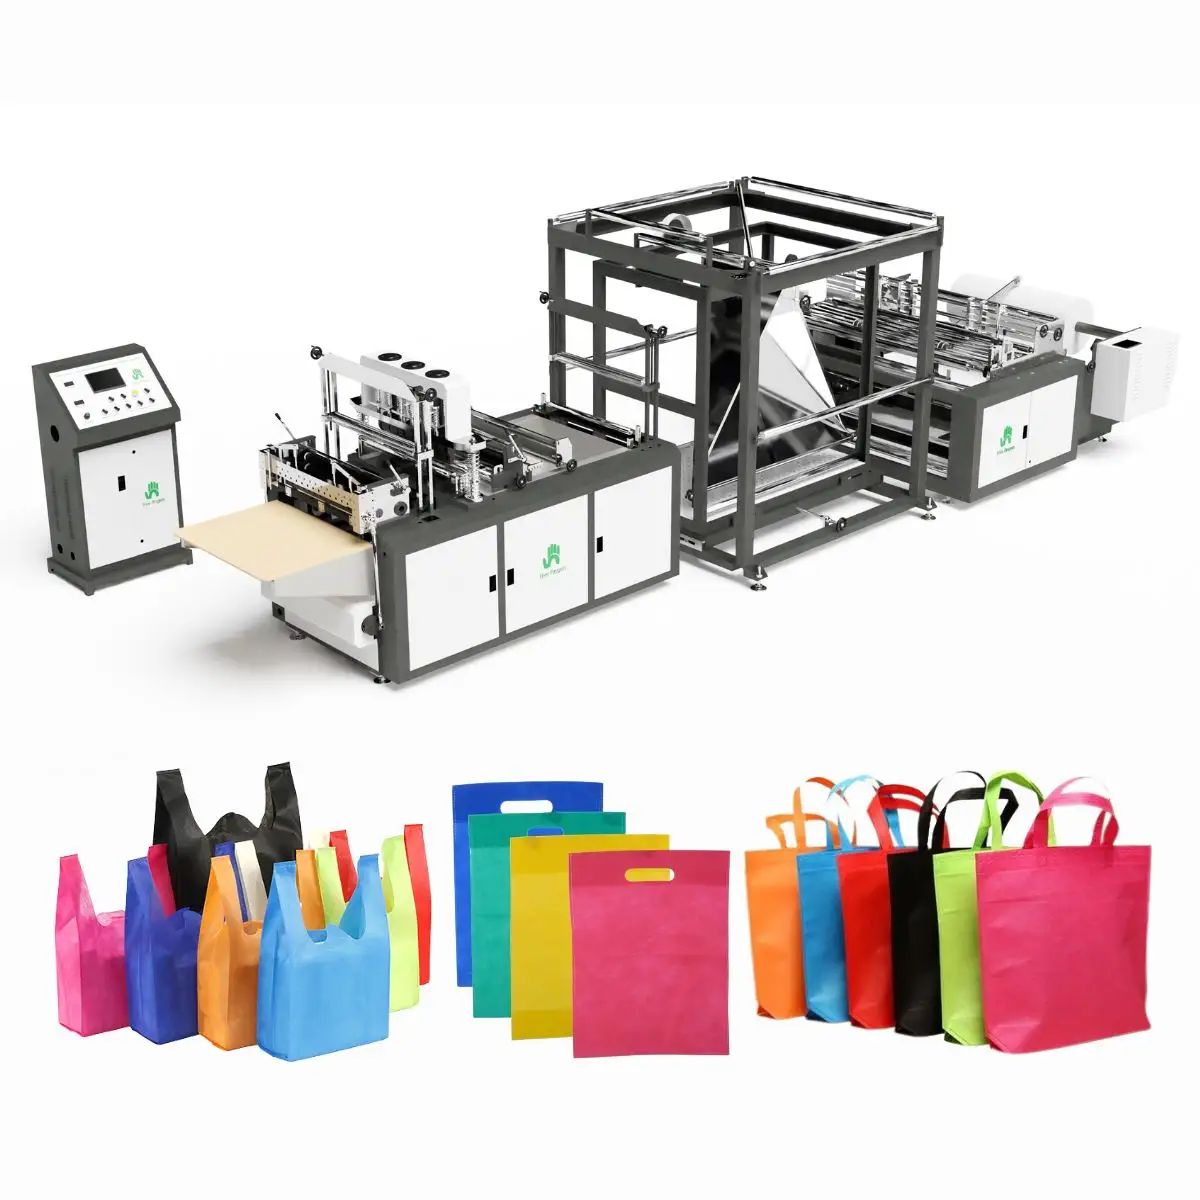 Machine de fabrication de sac de transport nouveau design Machines de fabrication de sac de shopping non tissé Ligne de production de tissu non tissé Single S Spunbond